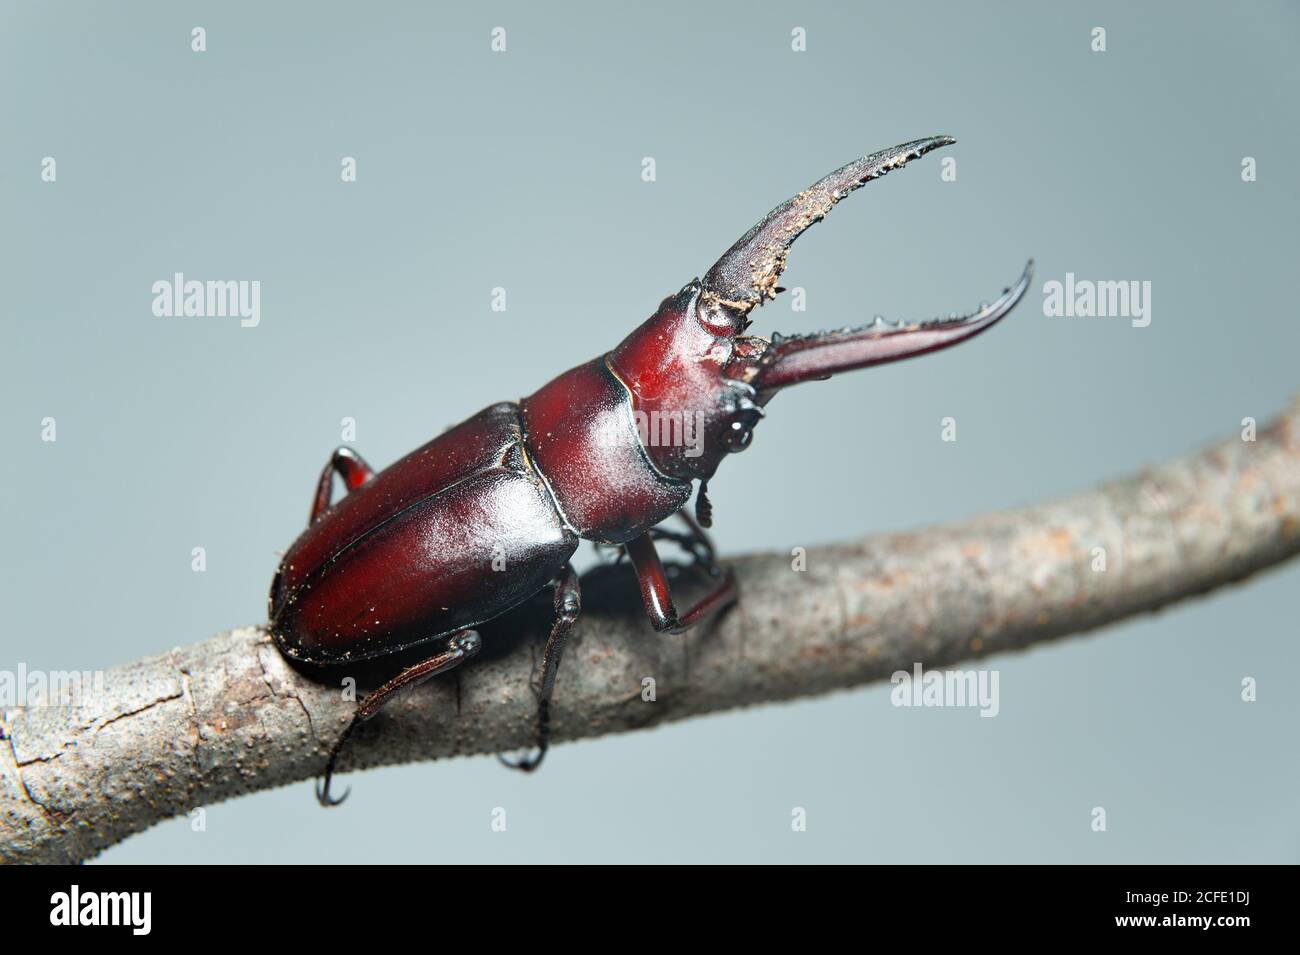 El escarabajo japonés llamado en japón kuwagata mushi. Aislado sobre fondo de hojas verdes. Aislado sobre fondo gris. Primer plano. Foto de stock